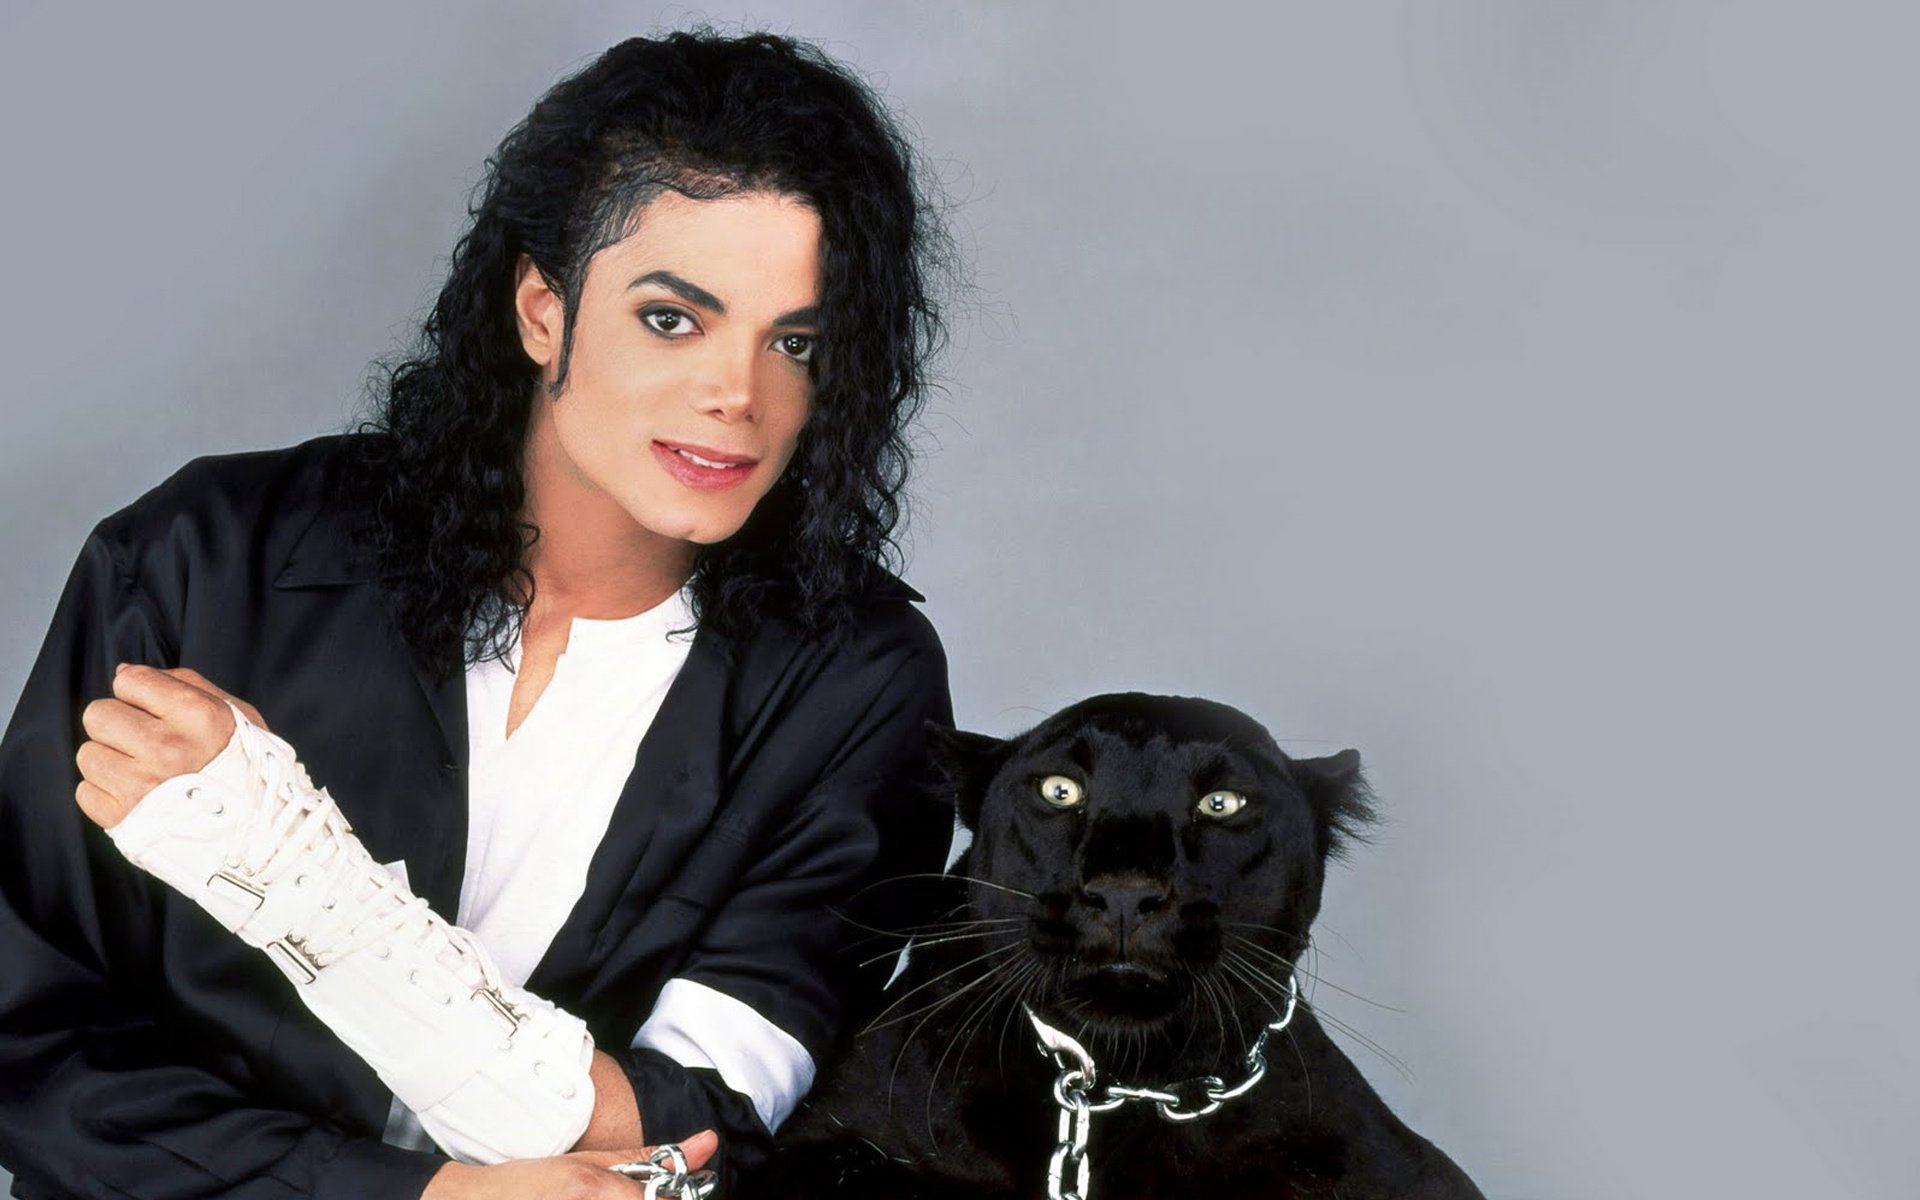 Micheal Jackson Michael Jackson - 1920x1200 Wallpaper 